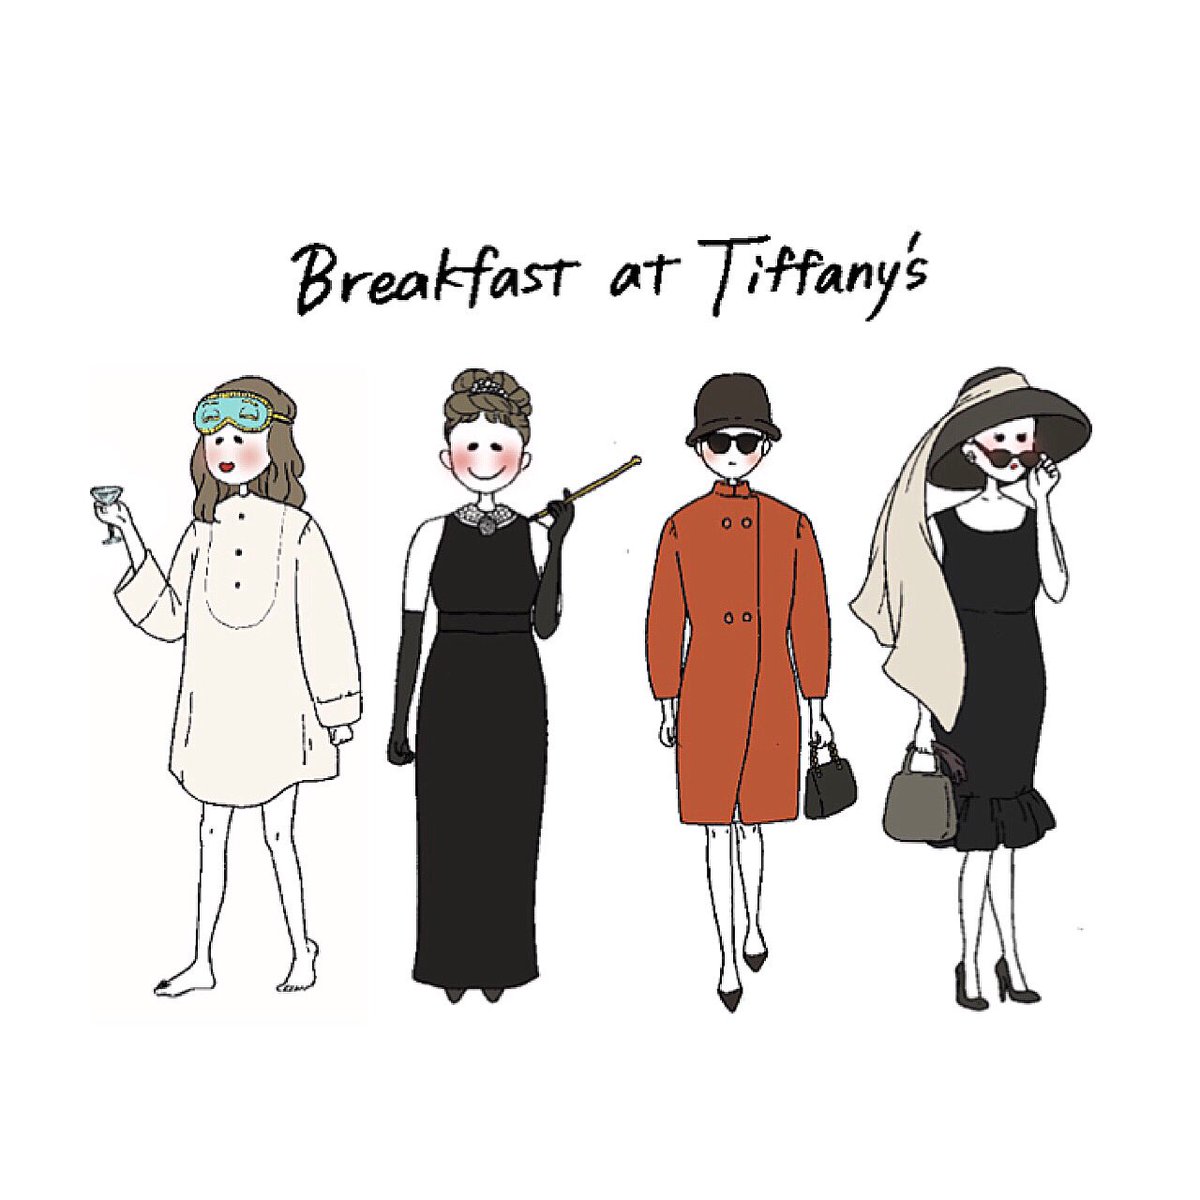 とまと ティファニーで朝食を この映画見ると女らしく生きたいなと思う イラスト イラストレーター 絵描きさんと繋がりたい オードリーヘップバーン ティファニーで朝食を